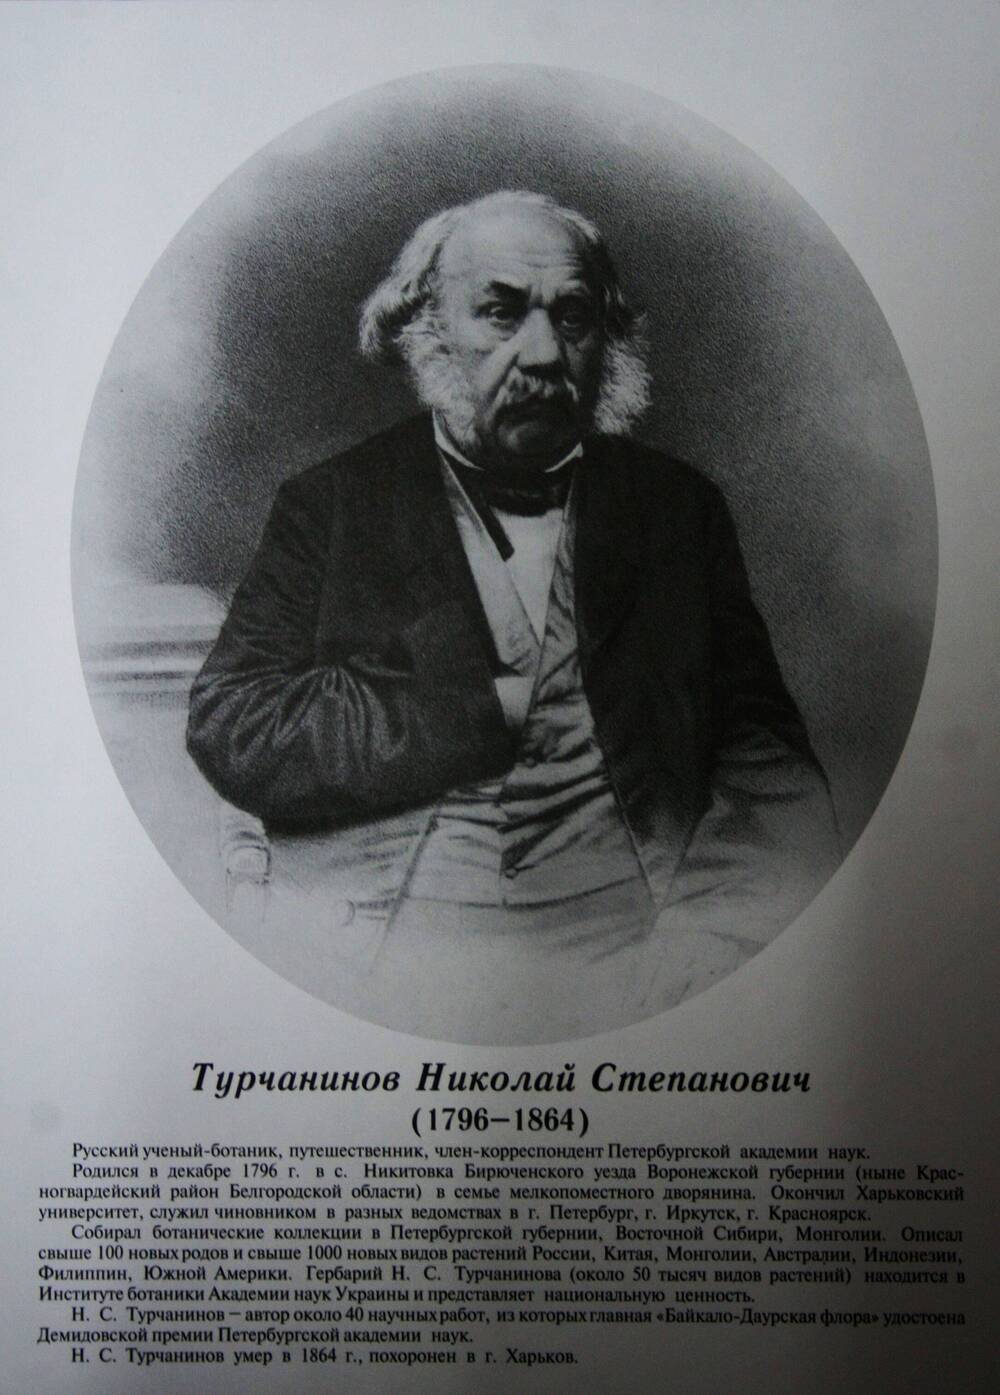 Плакат (фотопортрет) из комплекта Галерея славных имен Белгородчины. Турчанинов Николай Степанович (1796-1864).